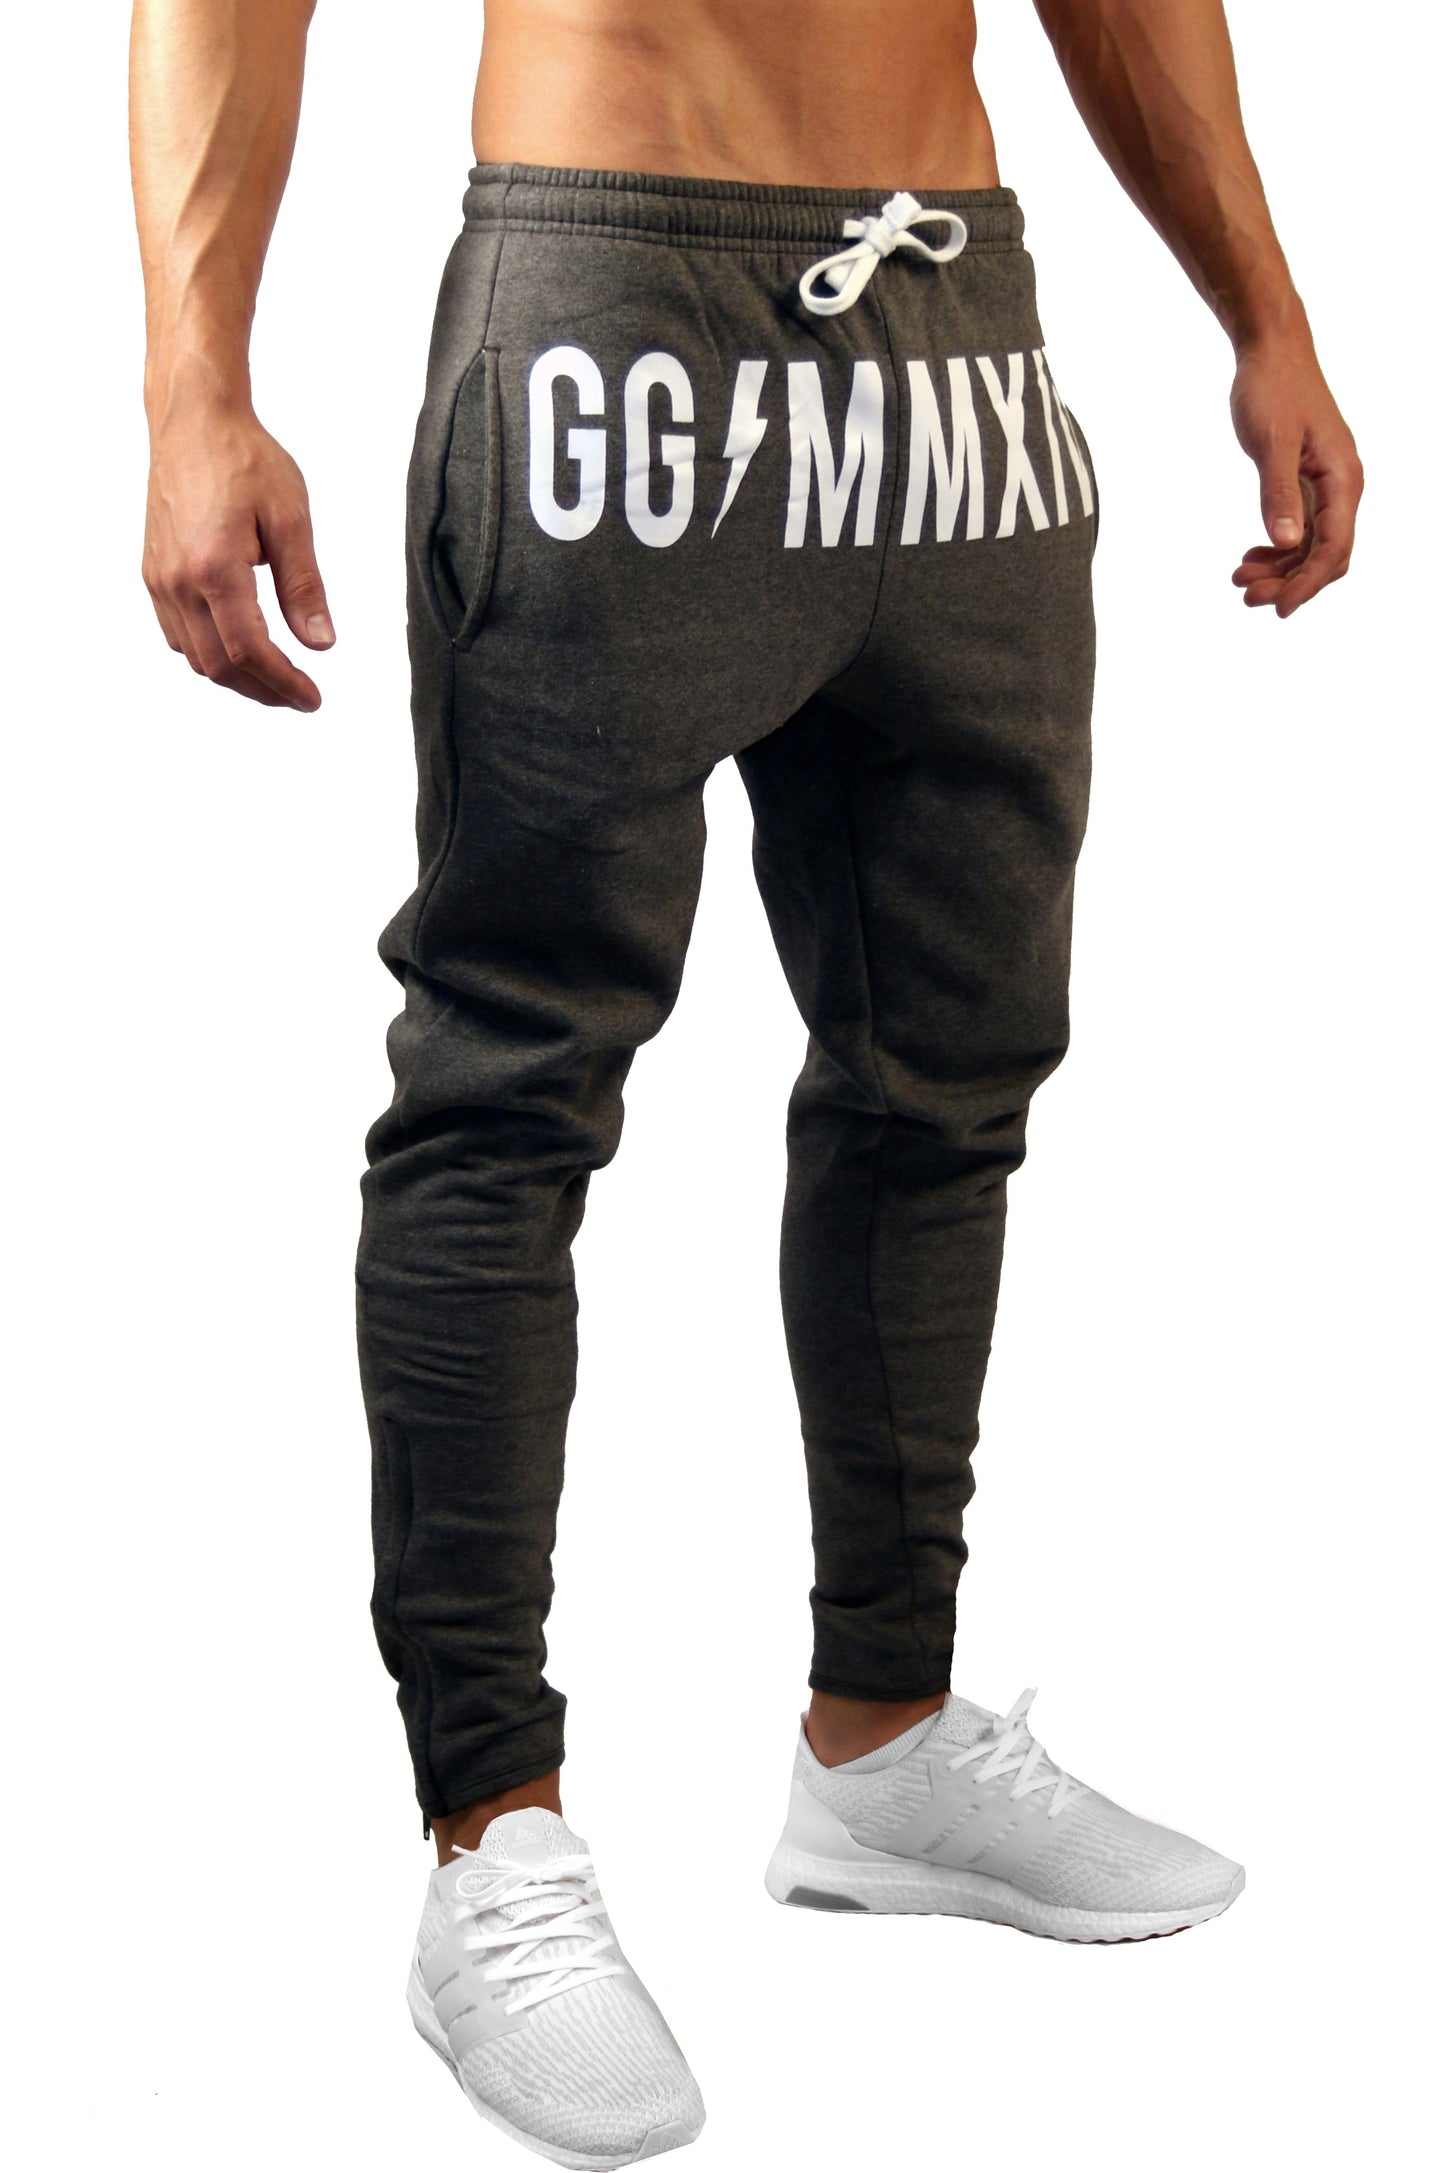 Powerboost Gym Pants - Dark Gray